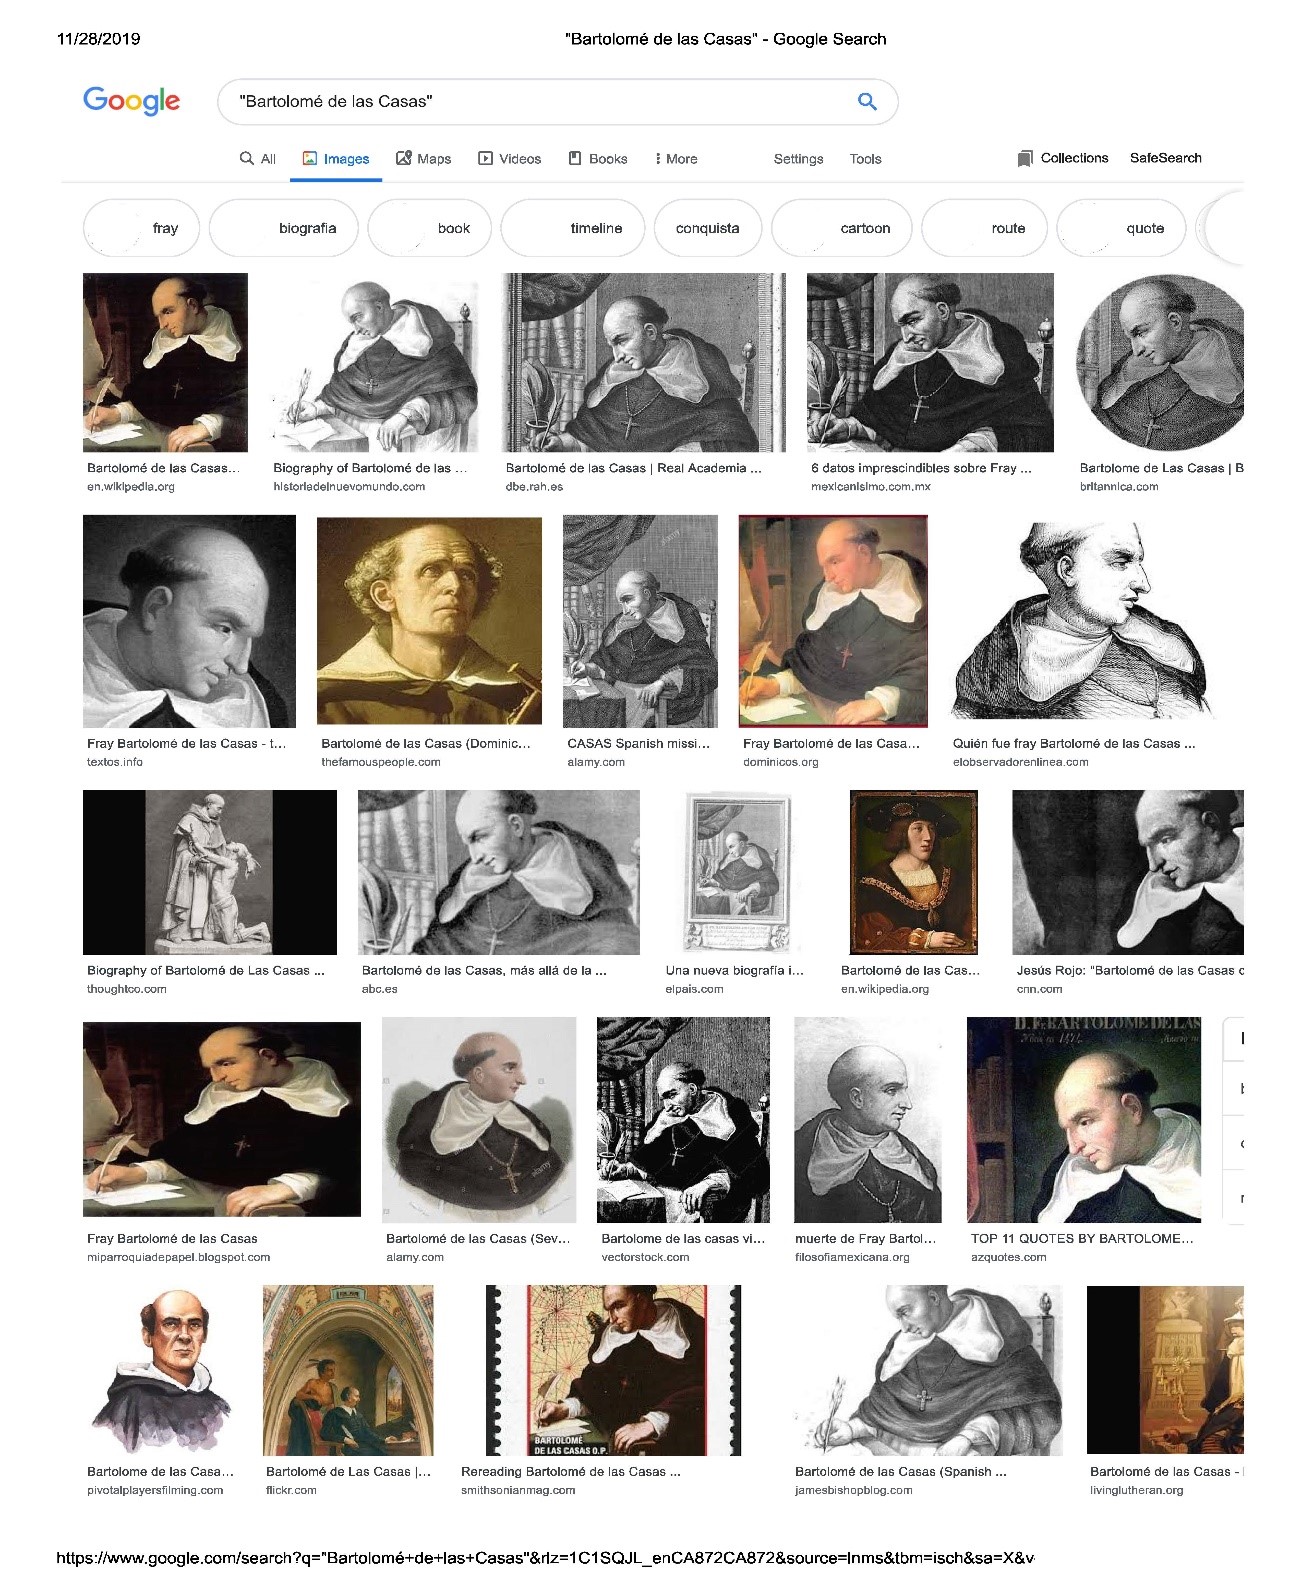 Google Image search results for “Bartolomé de las Casas”